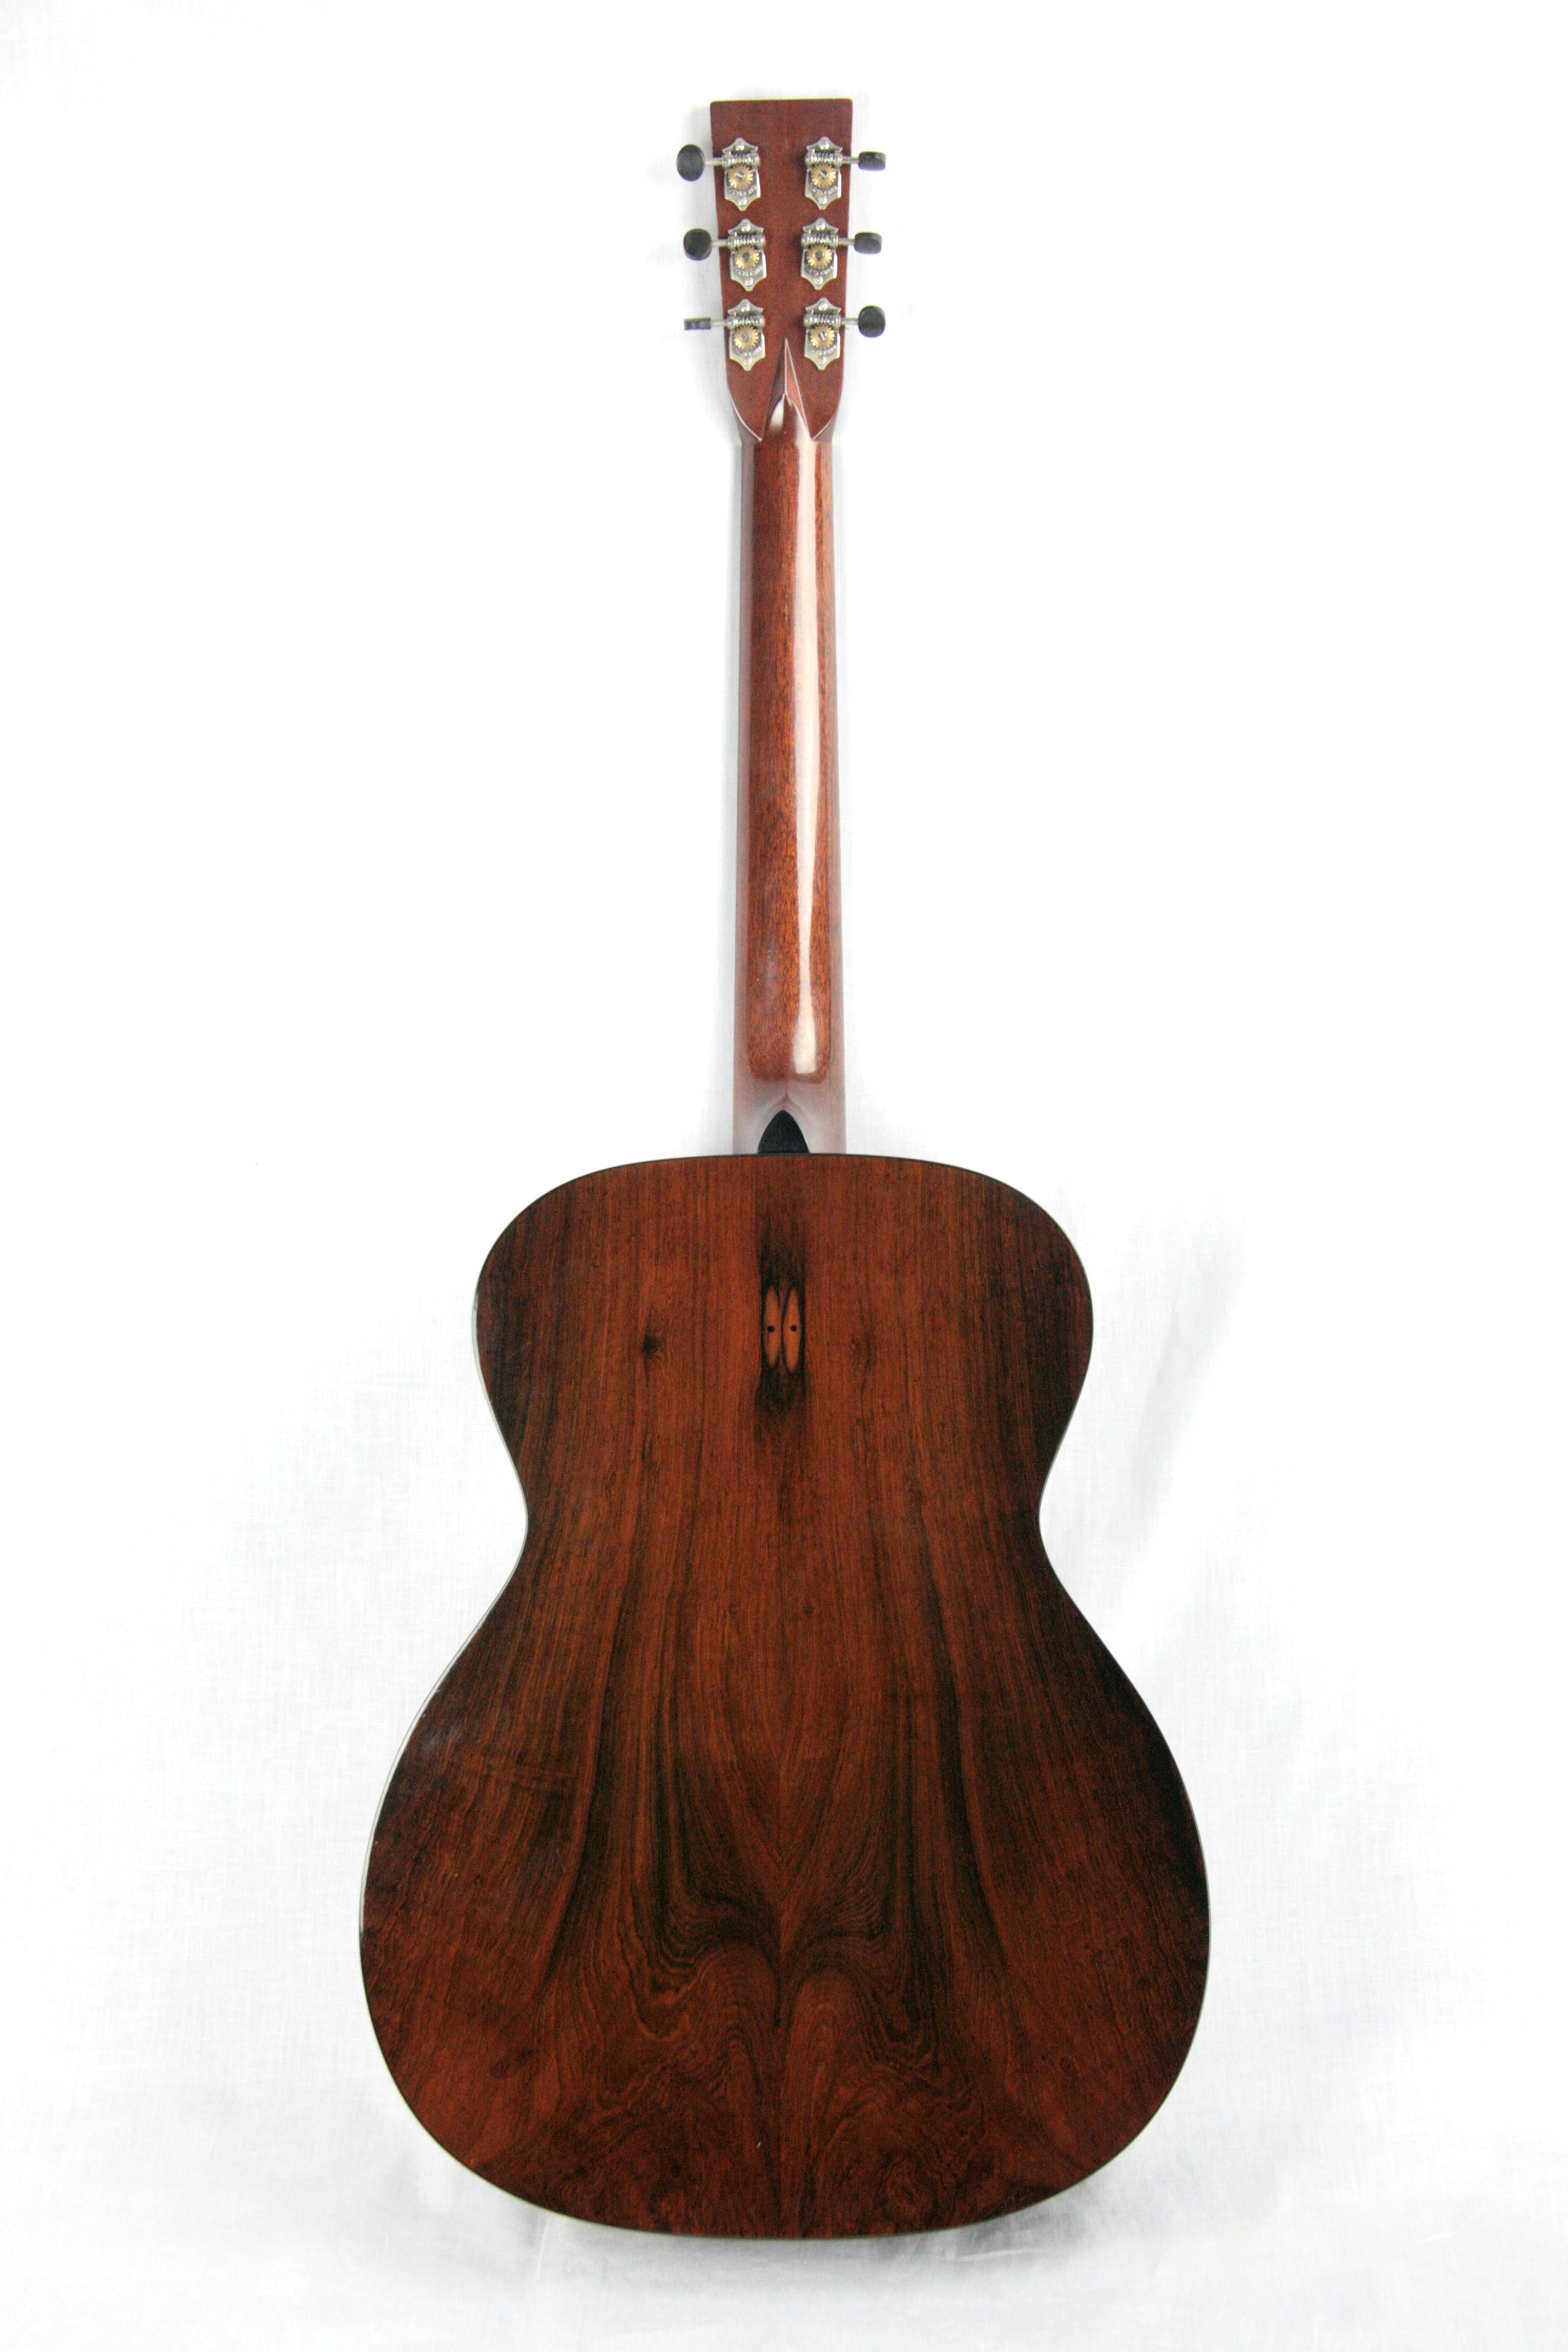 *SOLD*  2004 Santa Cruz OM PW BRAZILIAN ROSEWOOD Acoustic Guitar! Prewar style pwb oo 0 d 000